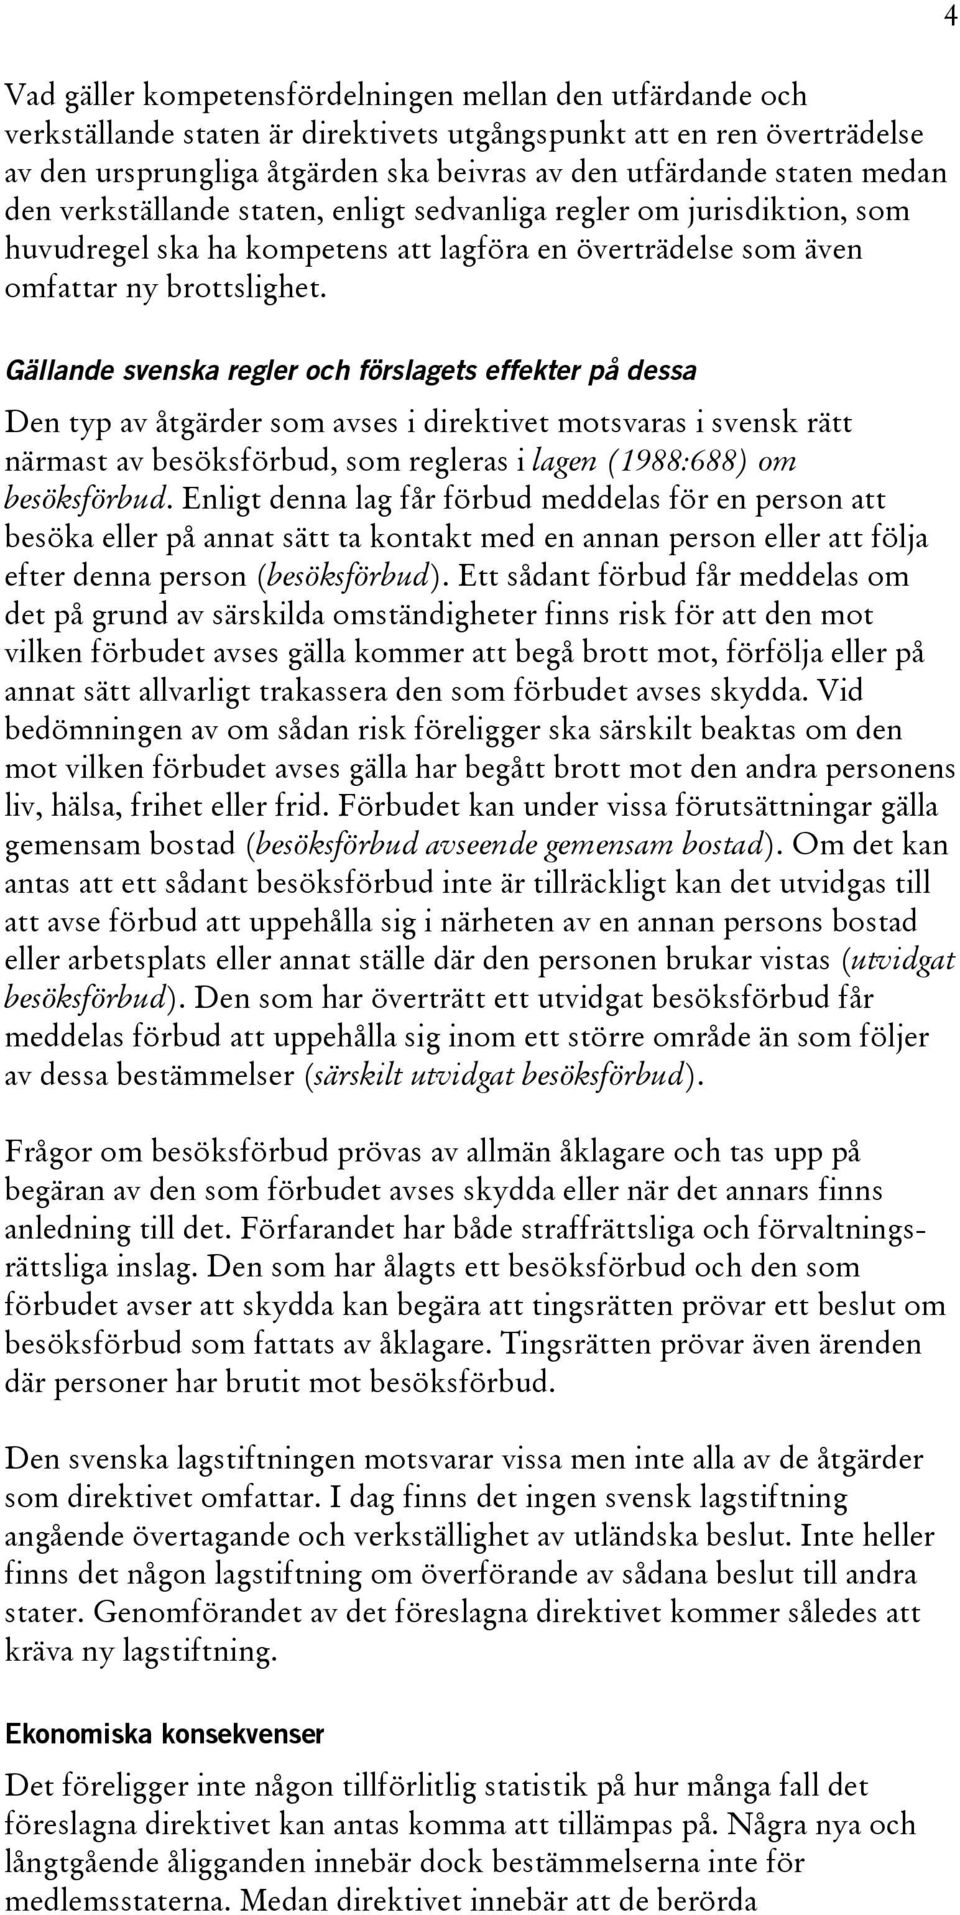 4 Gällande svenska regler och förslagets effekter på dessa Den typ av åtgärder som avses i direktivet motsvaras i svensk rätt närmast av besöksförbud, som regleras i lagen (1988:688) om besöksförbud.